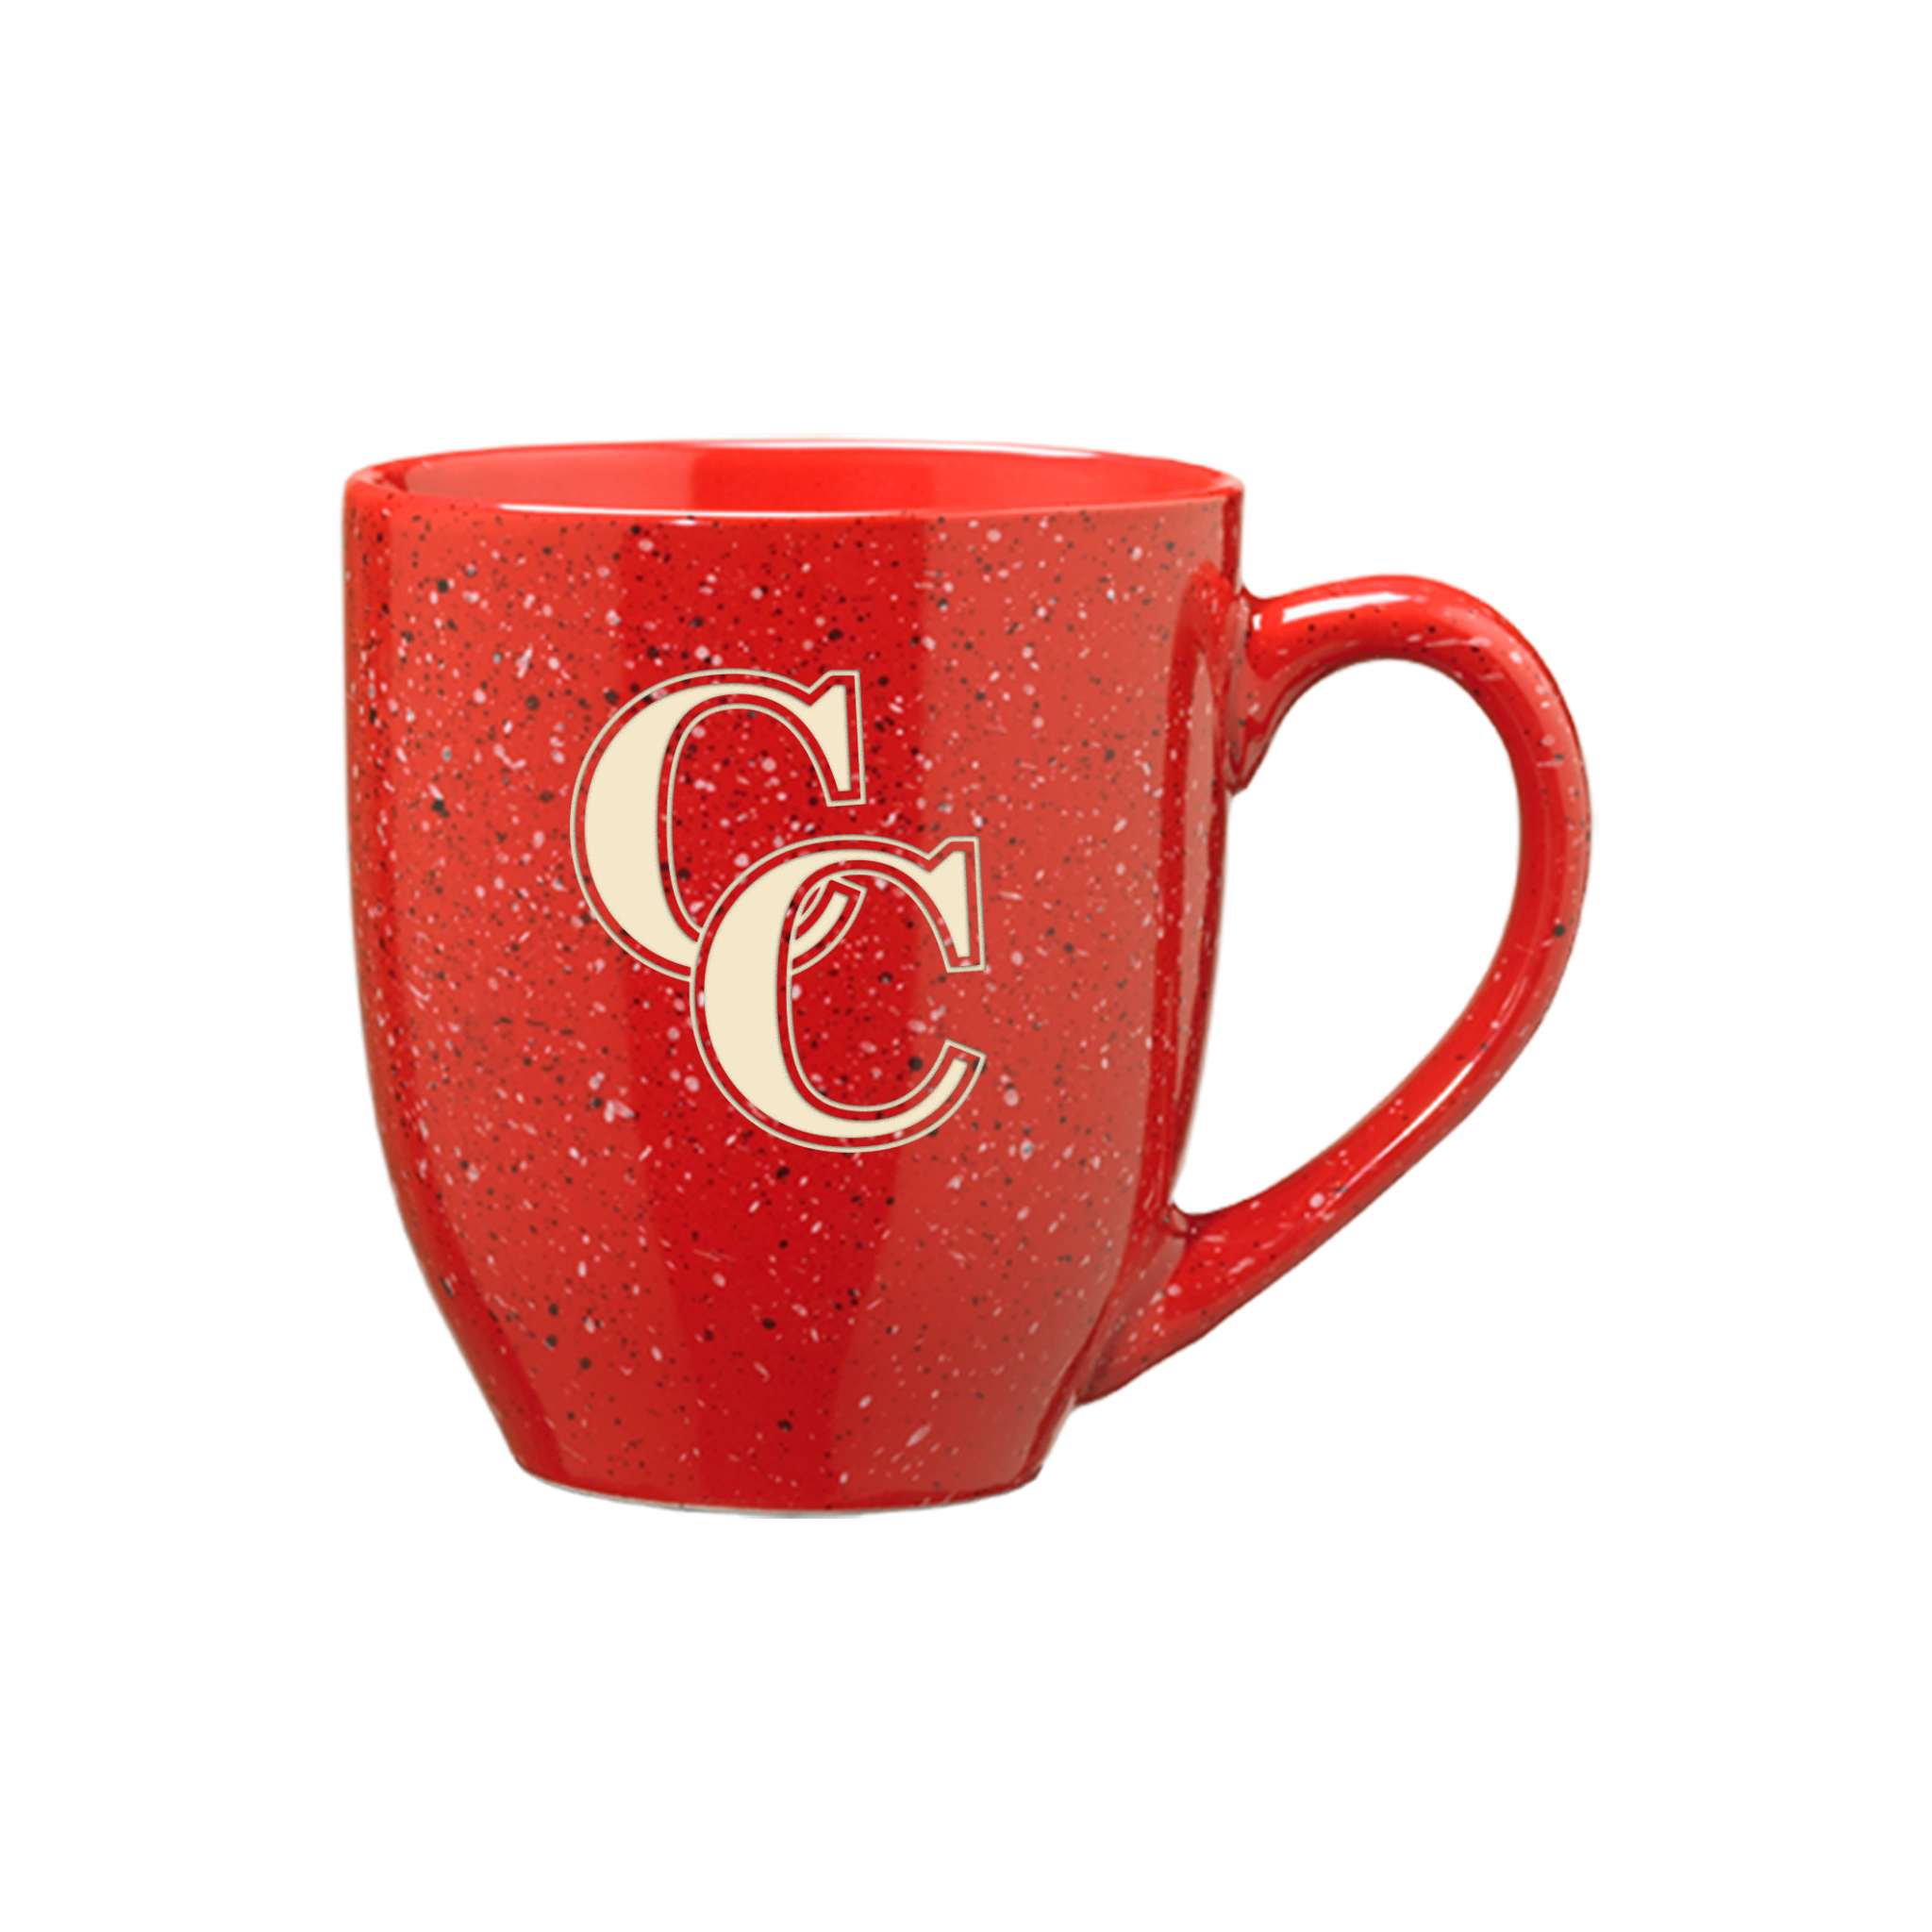 CC 16oz Speckled Mug